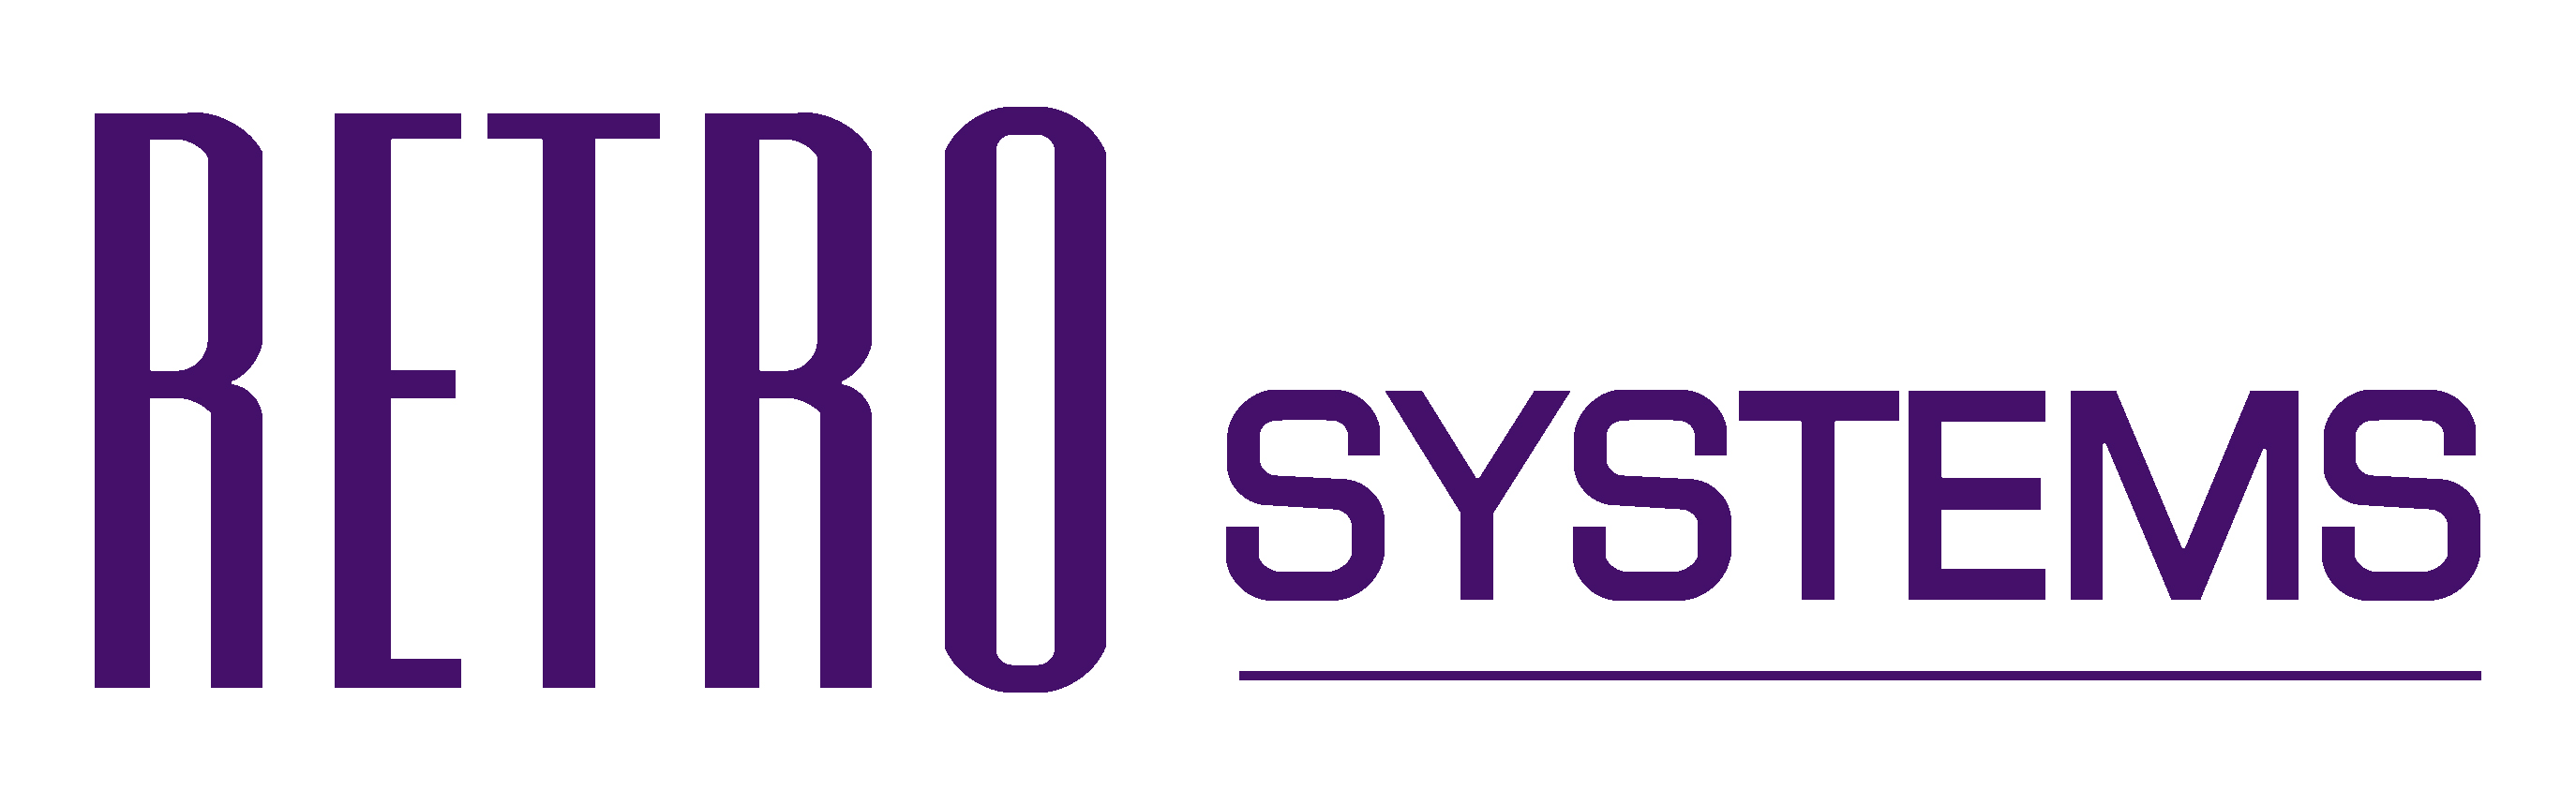 Retro Systems Logo